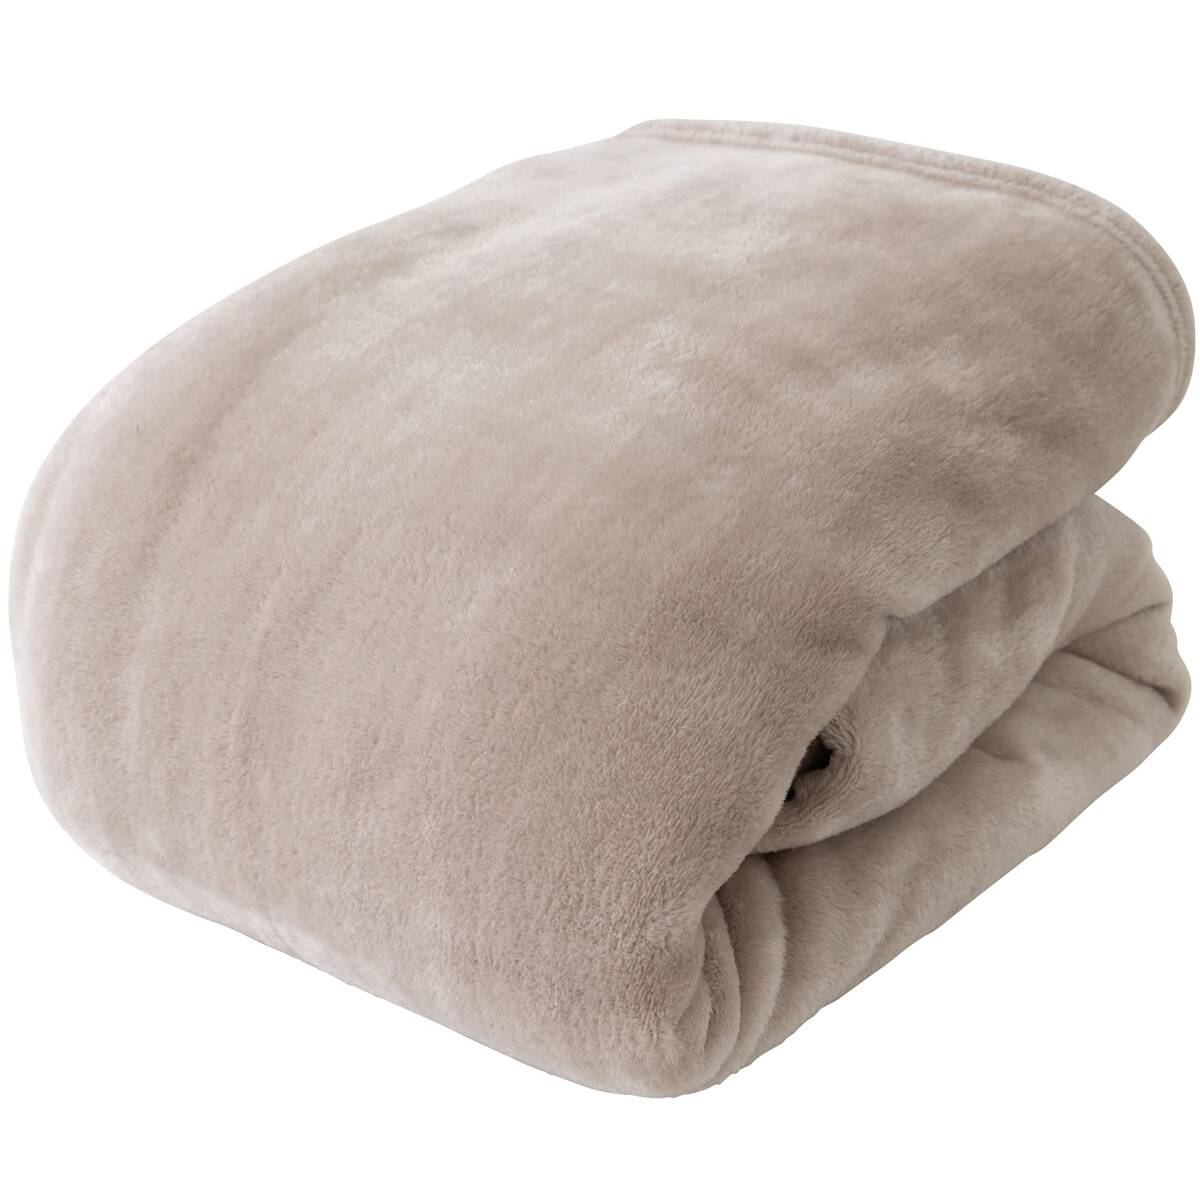 mofua одеяло одиночный зимний покрывало mofa микроволокно серый ju теплый ............500001N8